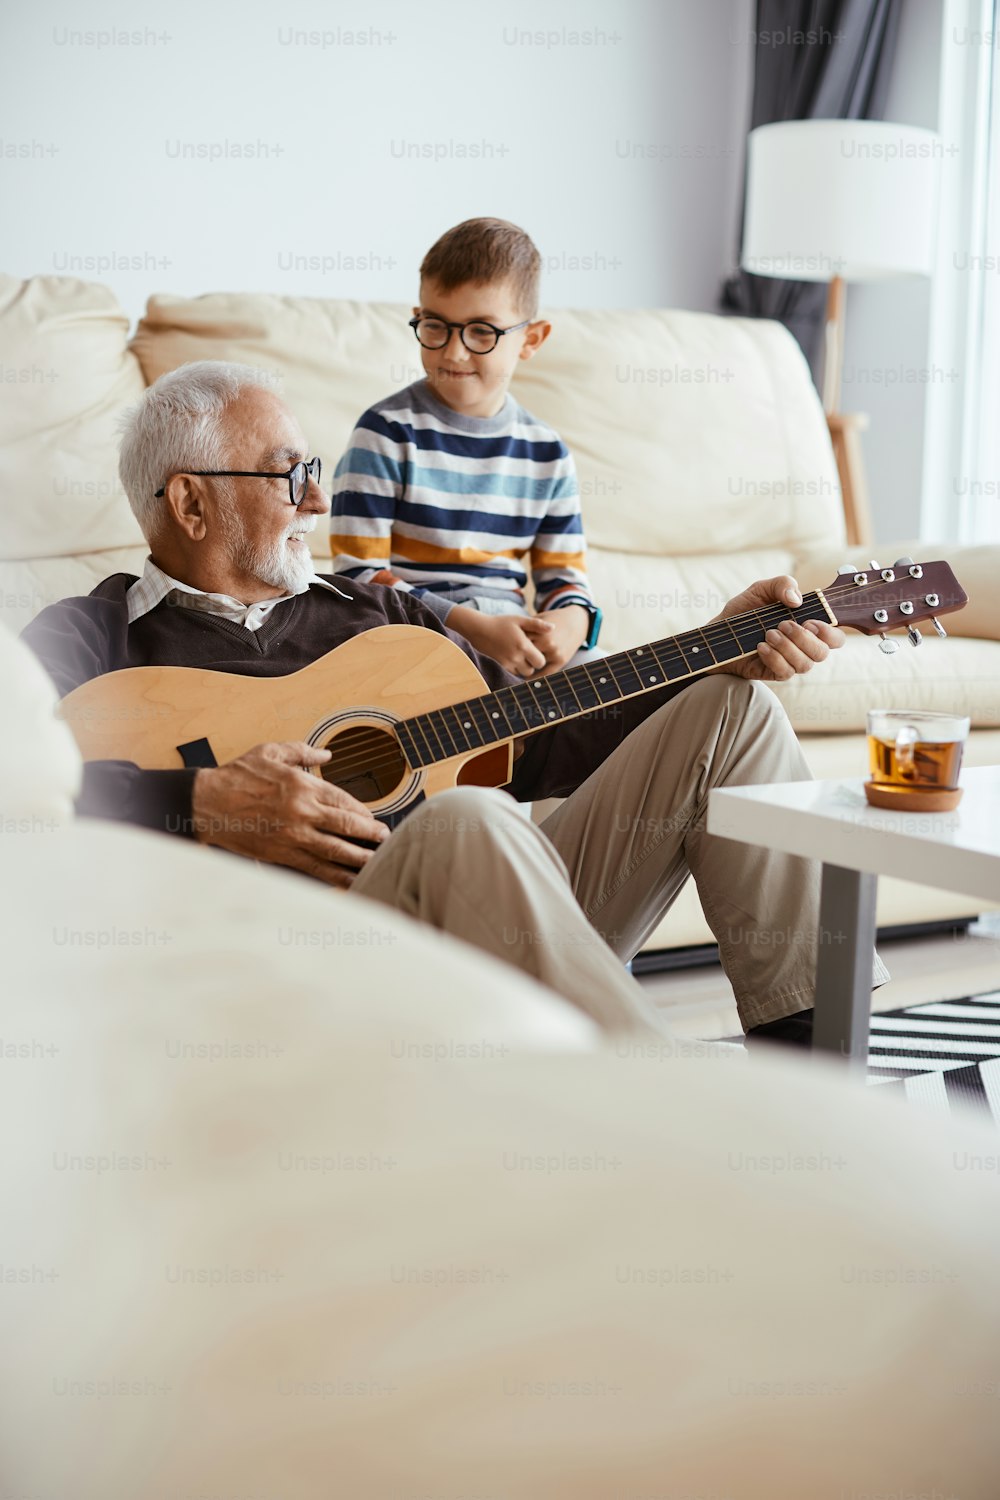 Nonno felice che suona la chitarra acustica mentre trascorre del tempo con suo nipote a casa.